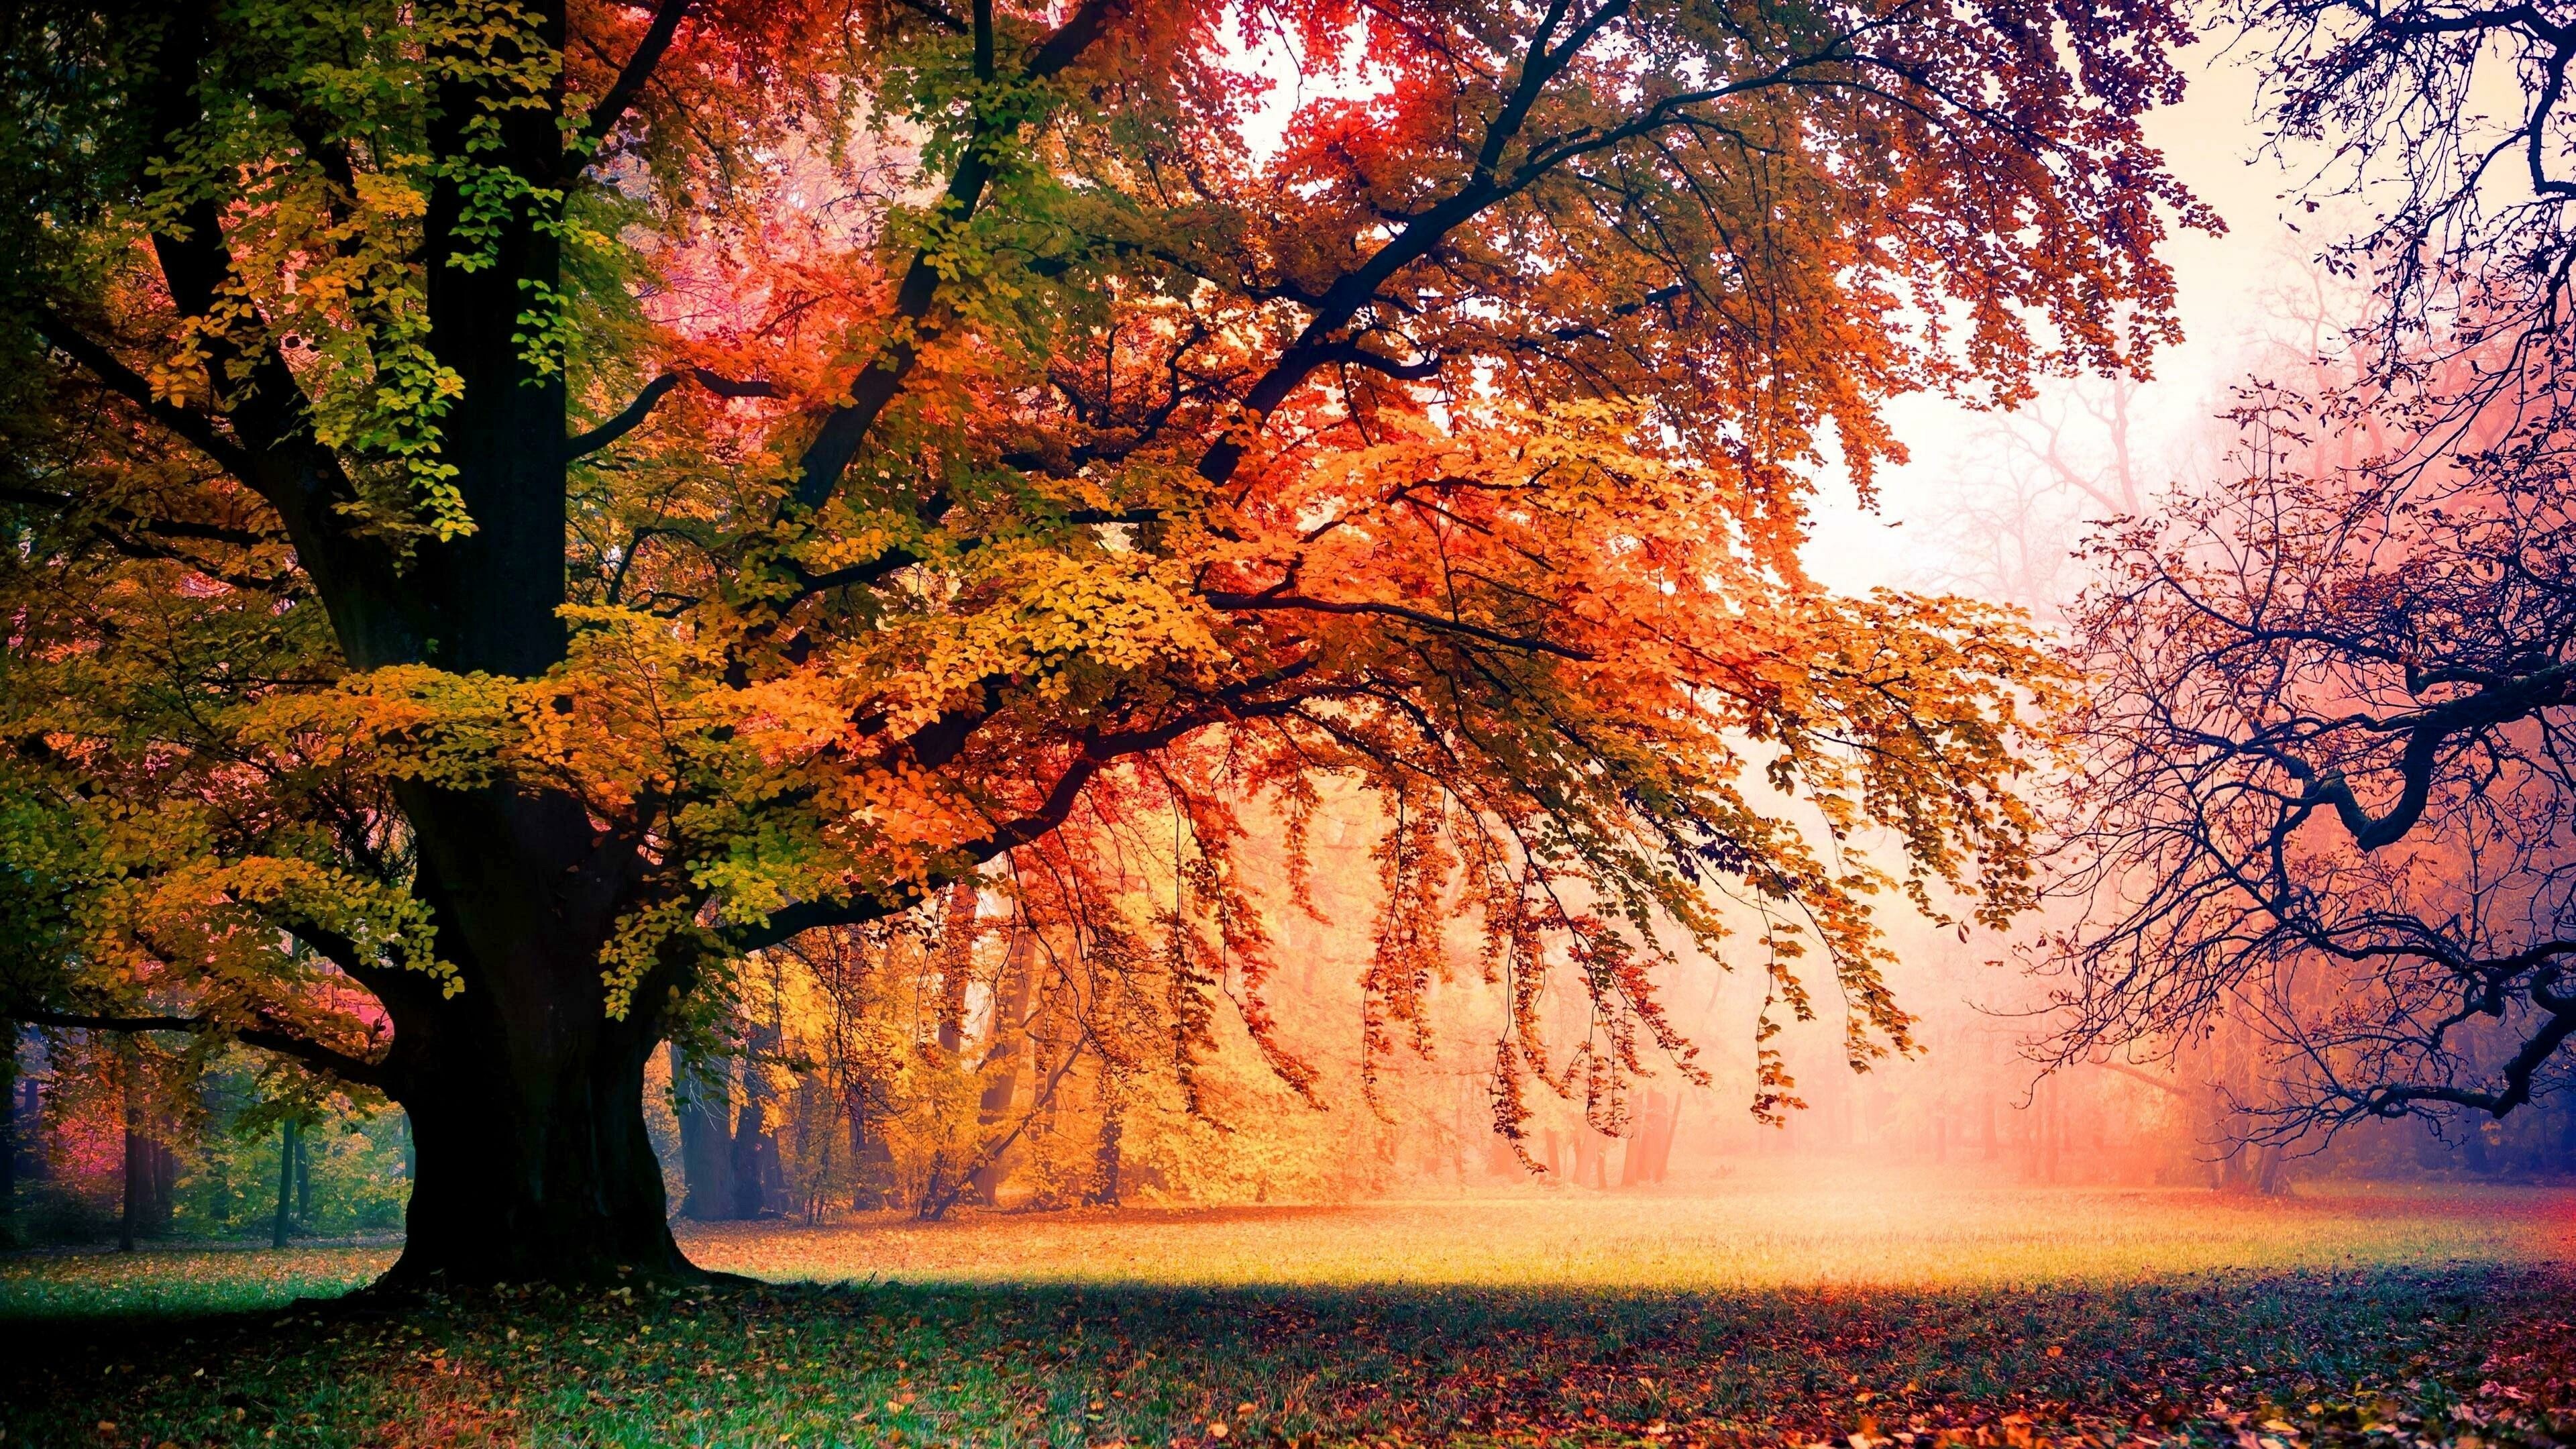 Autumn trees, 4K HD wallpapers, Fall foliage, Seasonal beauty, 3840x2160 4K Desktop